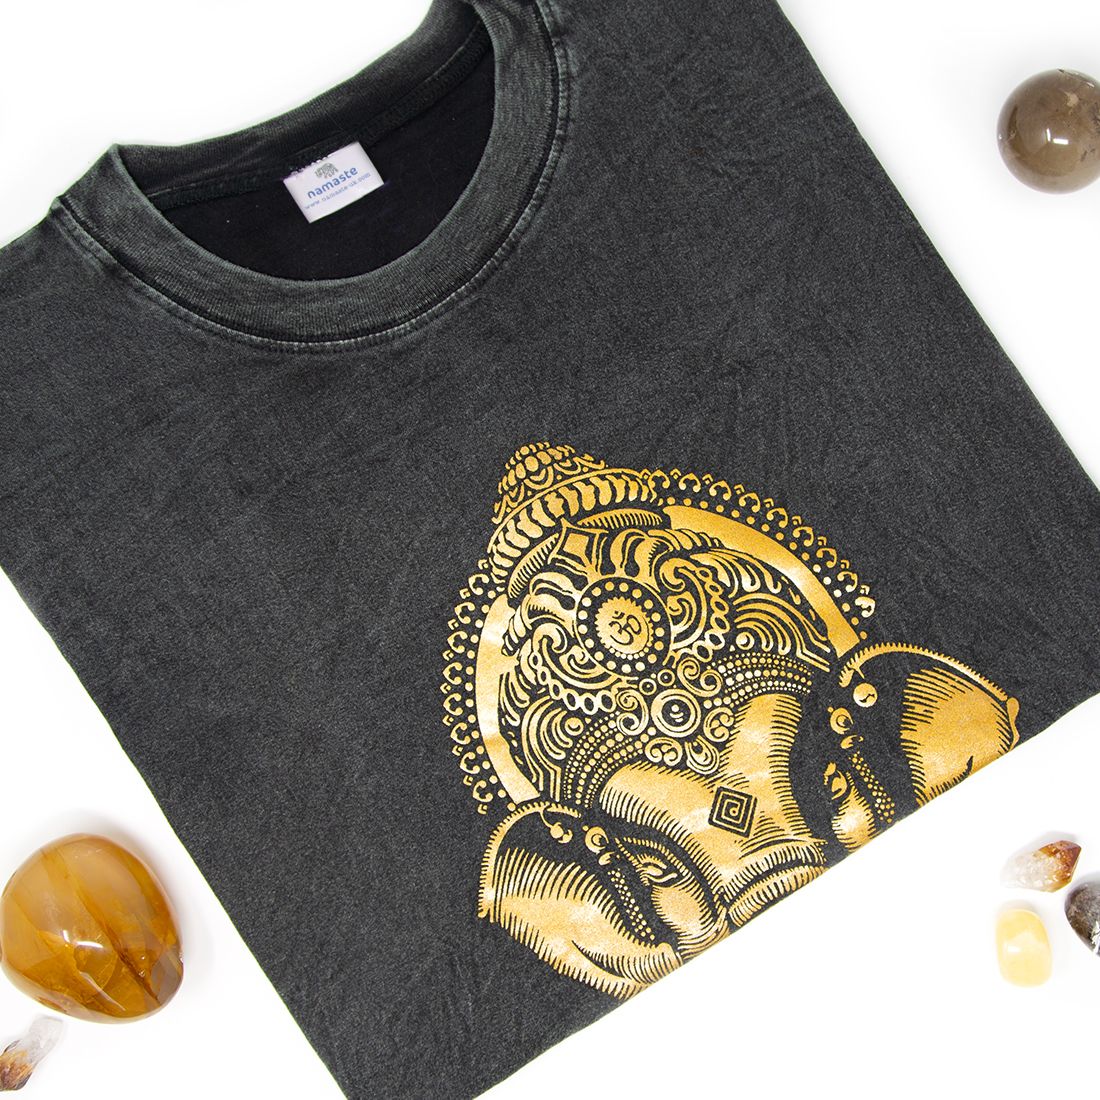 Unisex Stone Washed Ganesh Print T-Shirt - Black